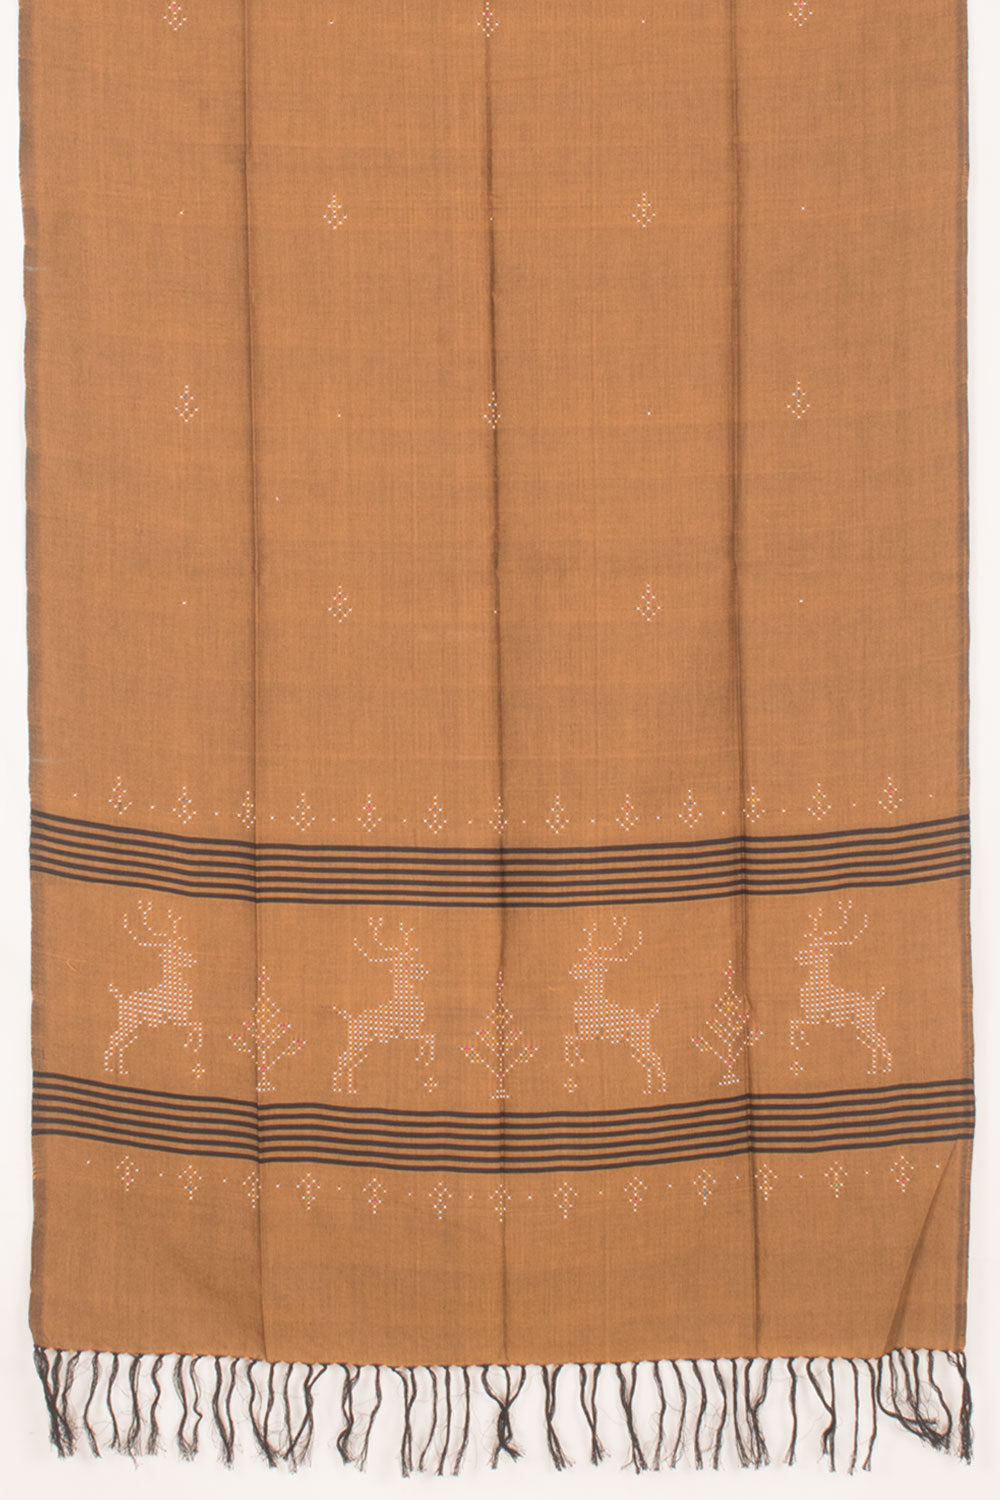 Tangaliya Cotton 2-Piece Salwar Suit Material 10058593